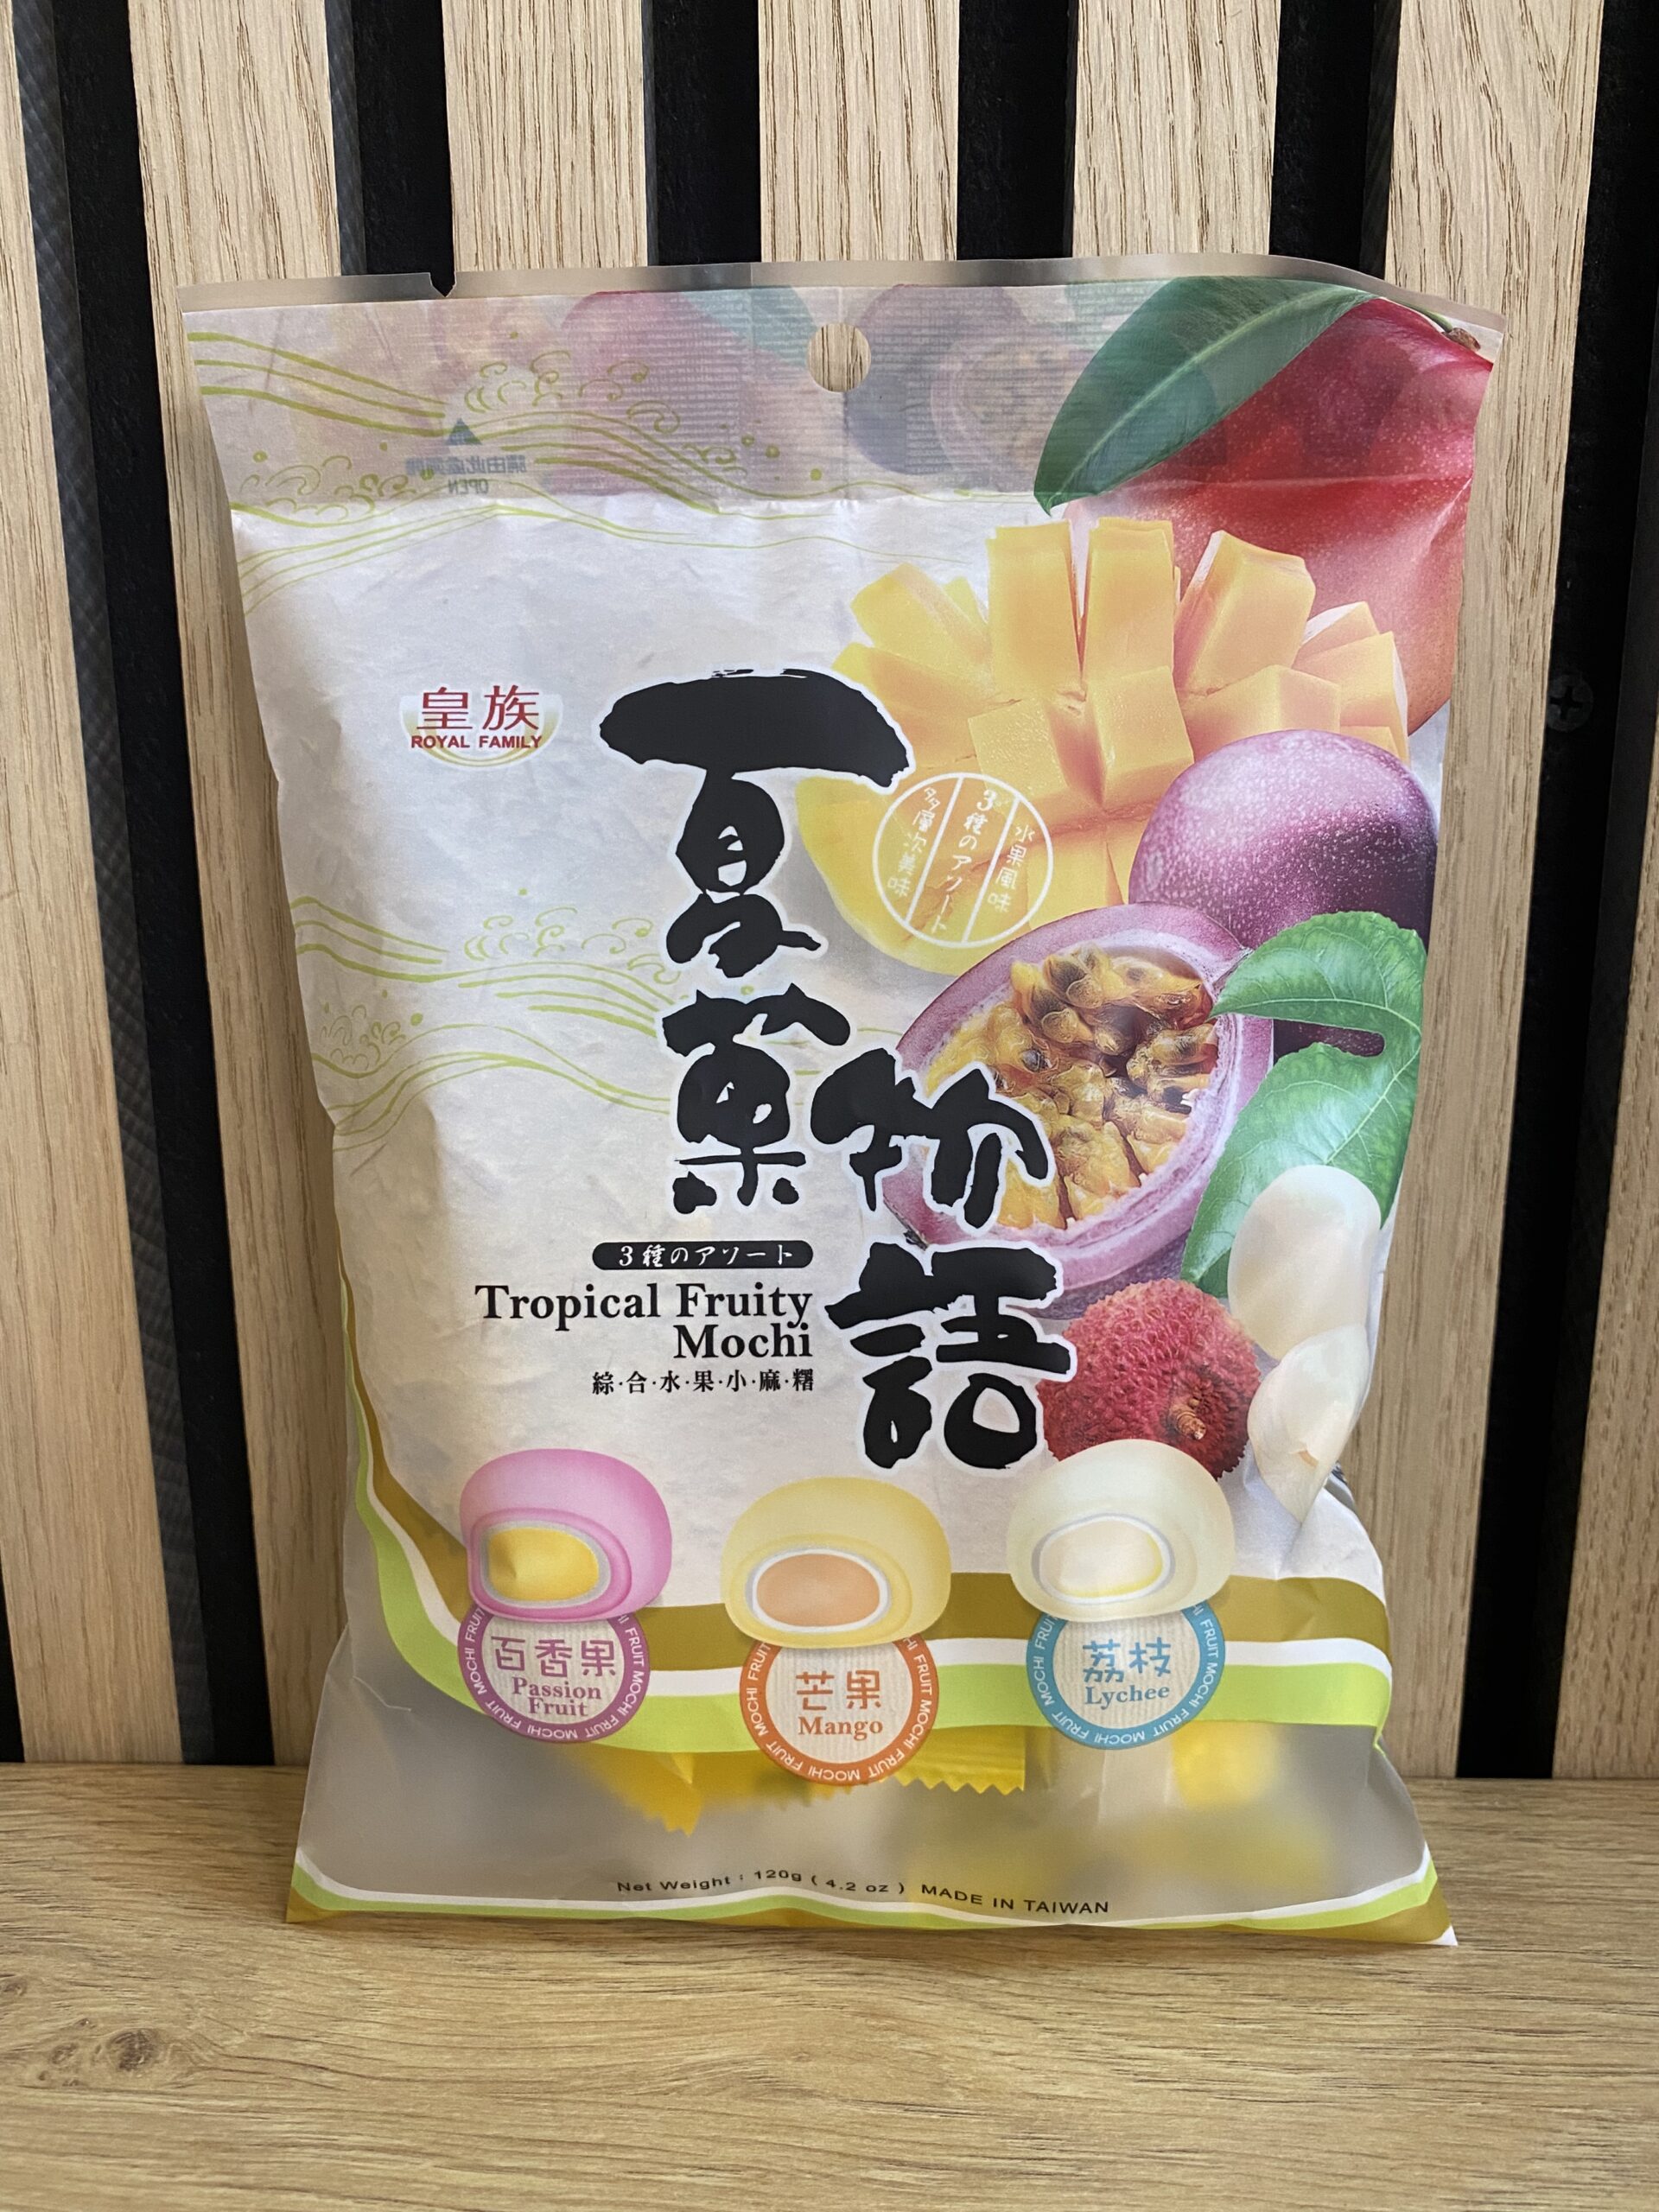 Tropical Fruity Mochi 120g - 皇族 夏菓物語 綜合水果小麻糬 袋裝 120g